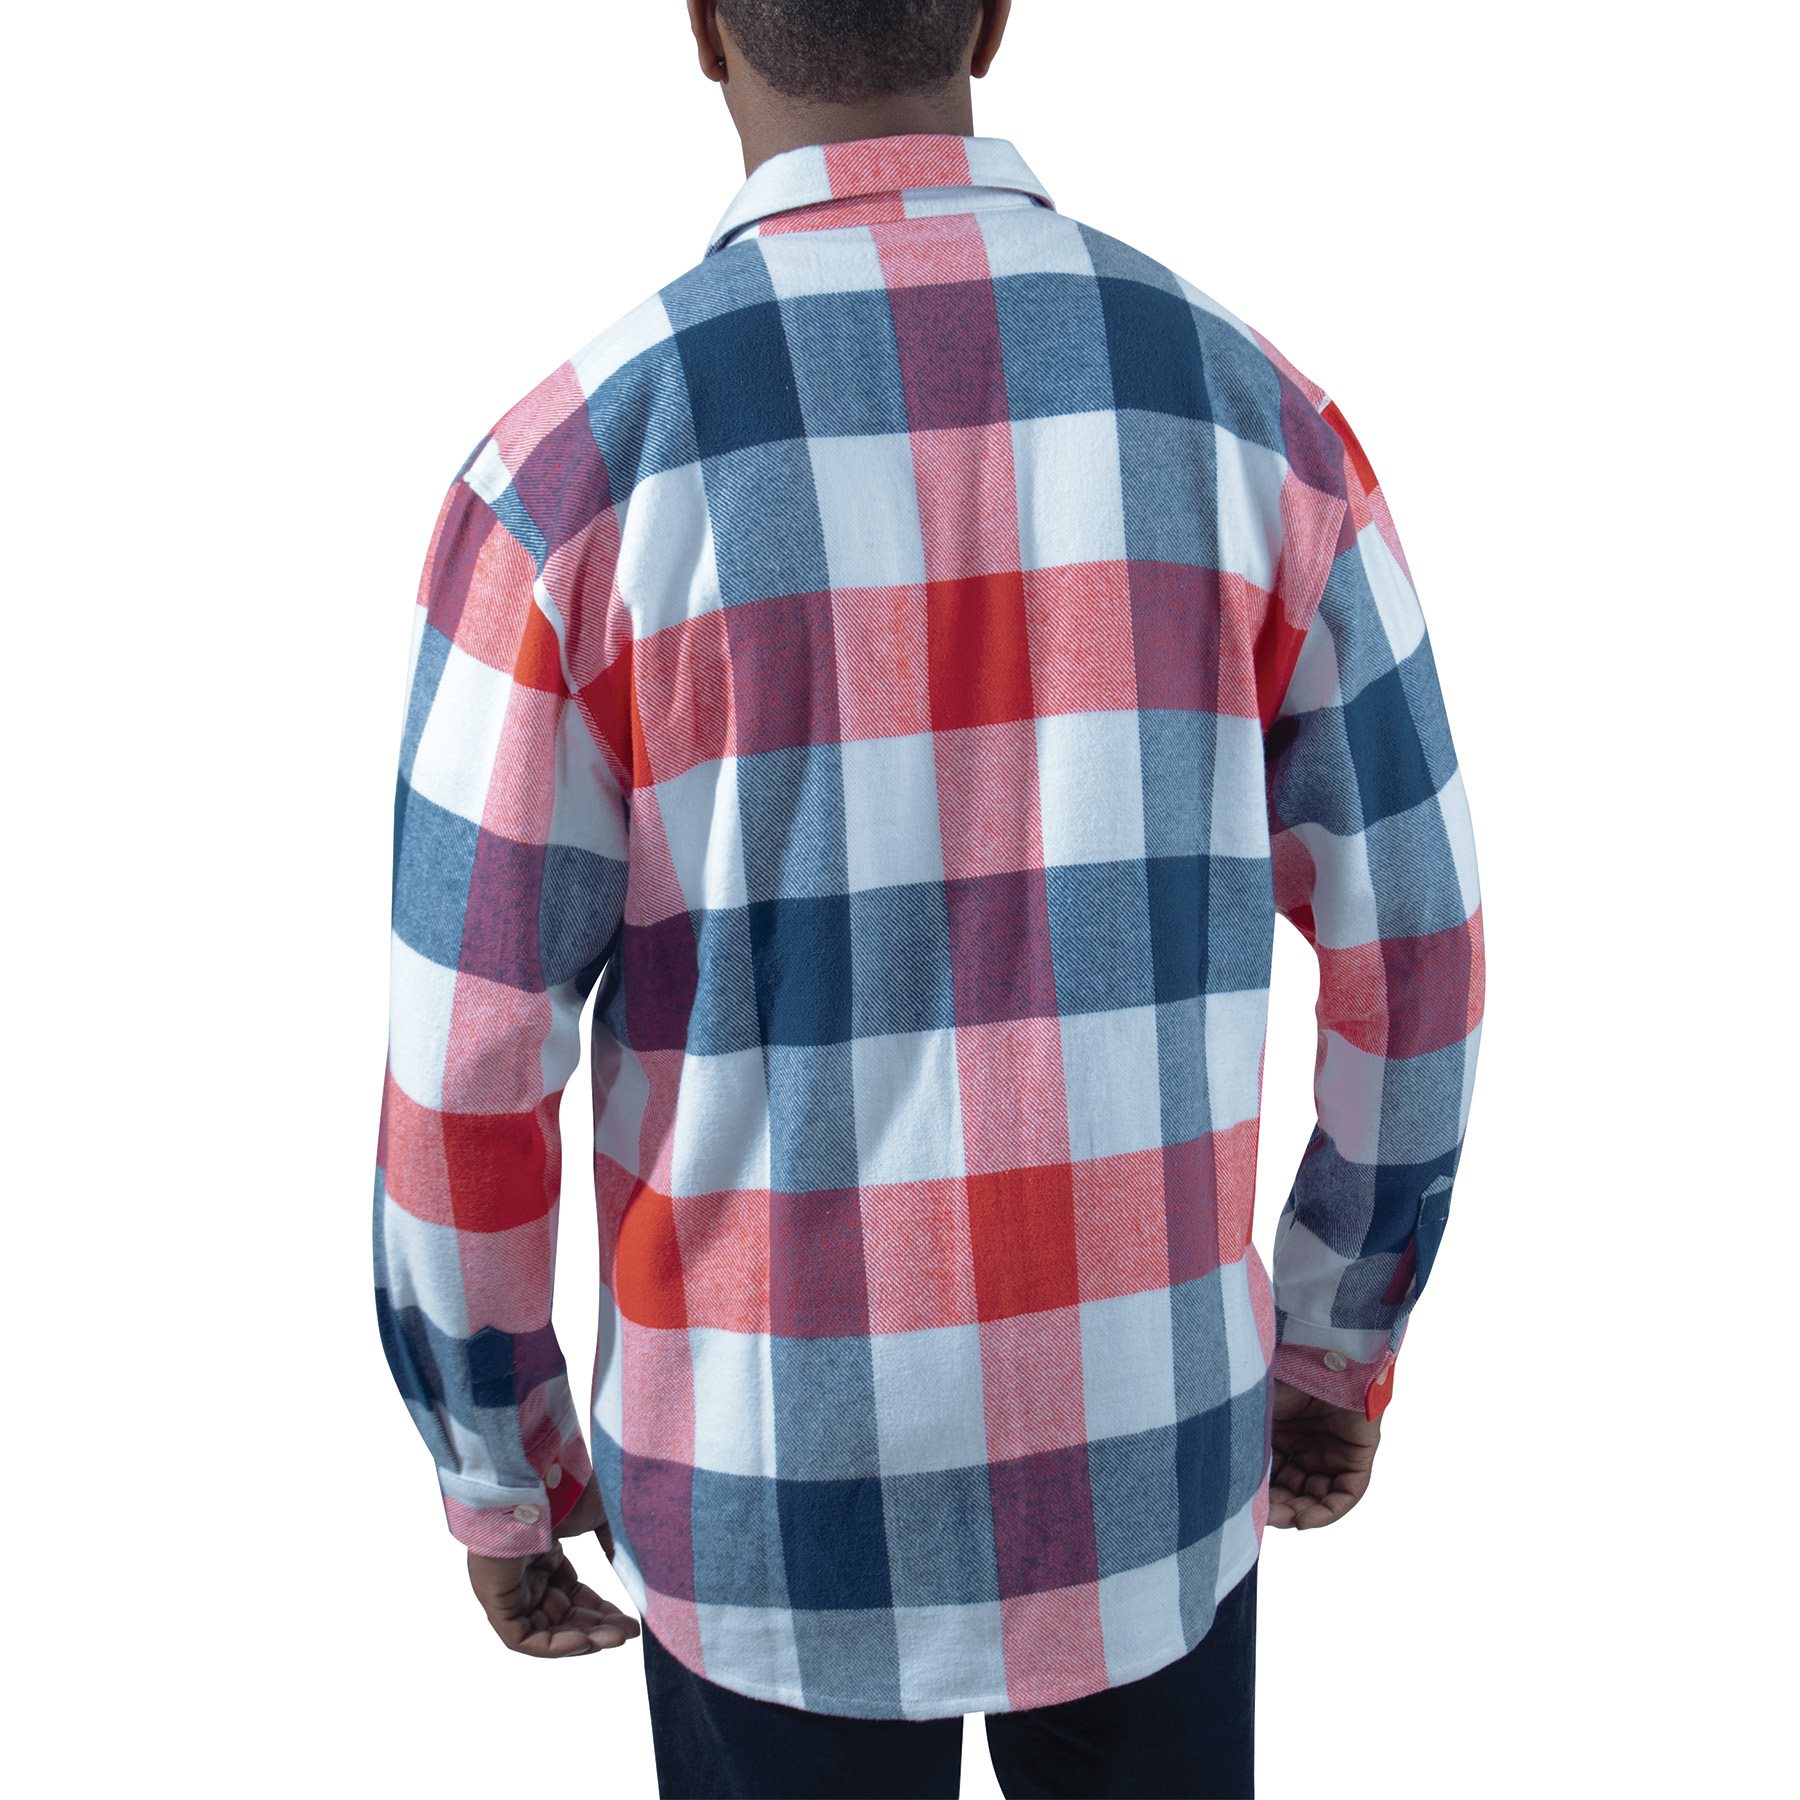 Lumberjack plaid shirt FLANNEL RED/WHITE/BLUE ROTHCO 47390 L-11